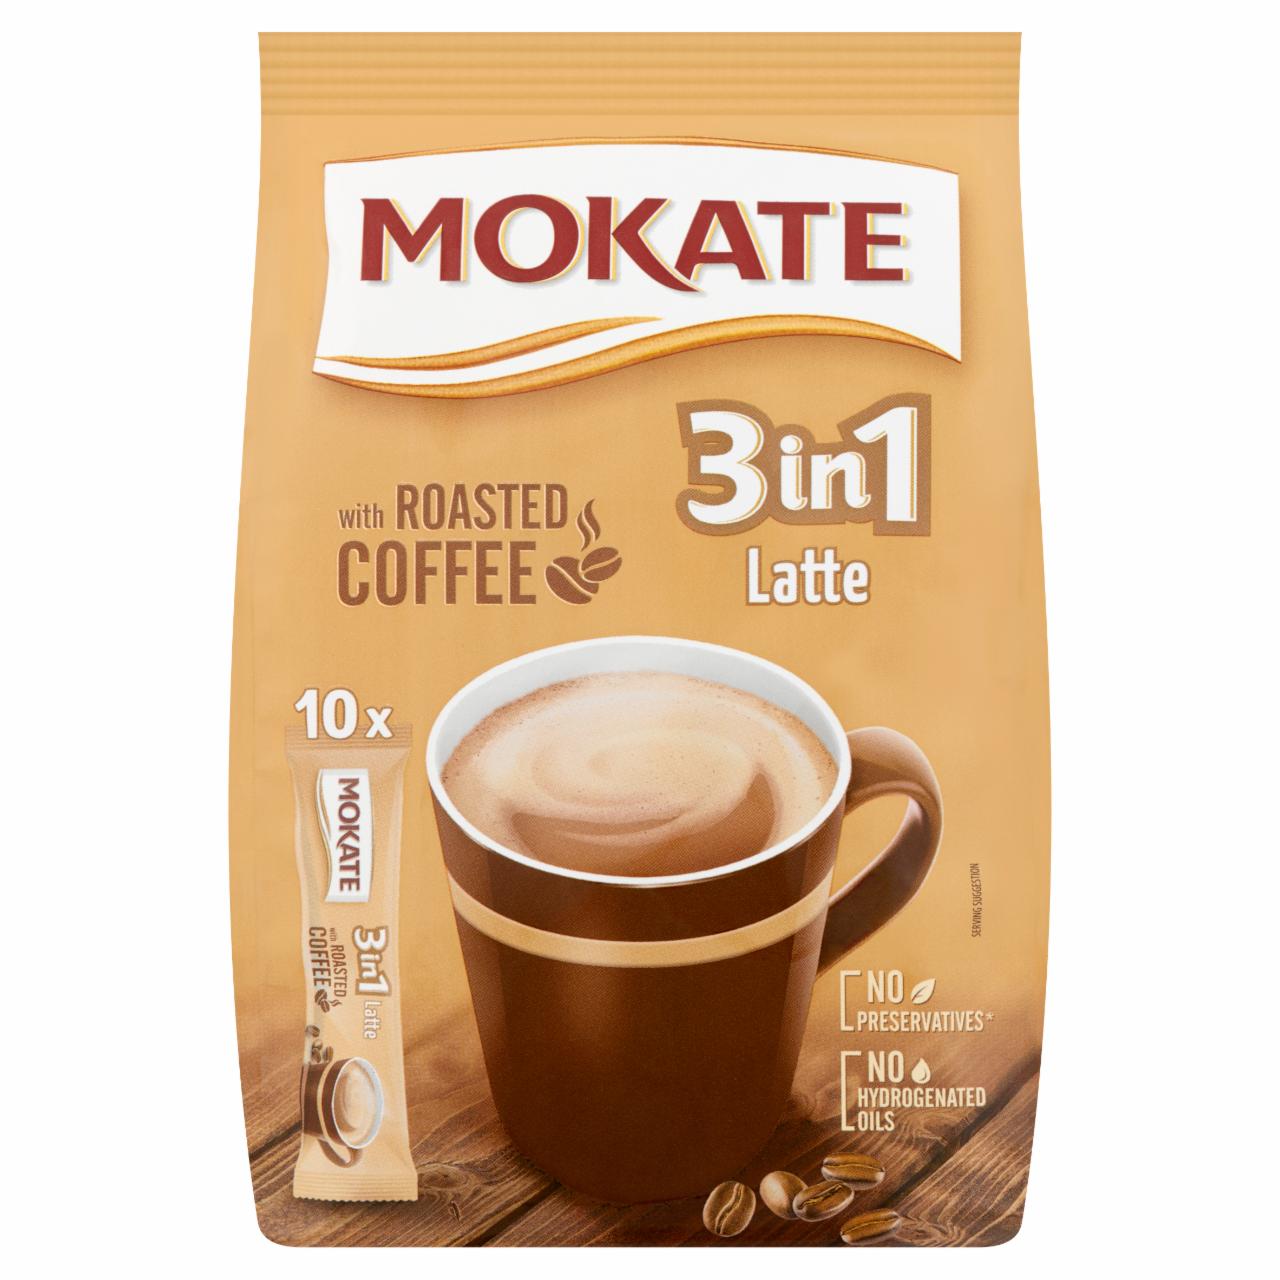 Képek - Mokate 2in1 Latte azonnal oldódó kávéspecialitás 10 db 150 g